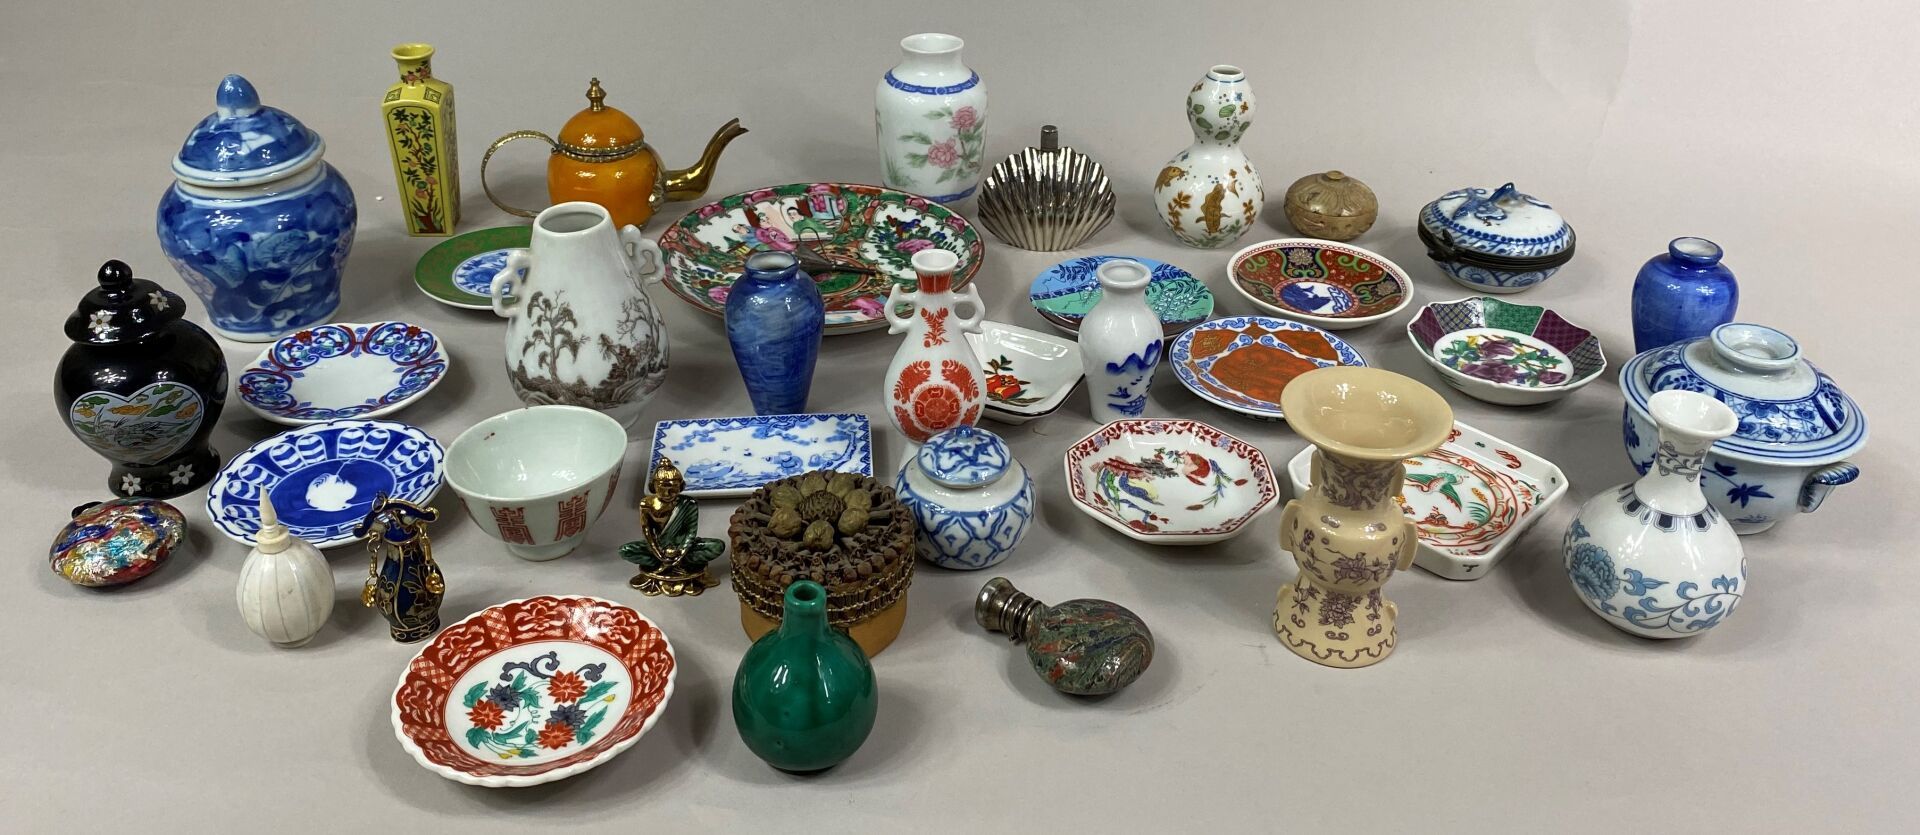 Null 包括花瓶、小盘子、茶壶、鼻烟壶和带有亚洲装饰的花、鱼和其他几何图案的有盖花盆在内的一套微型制品

(原样)